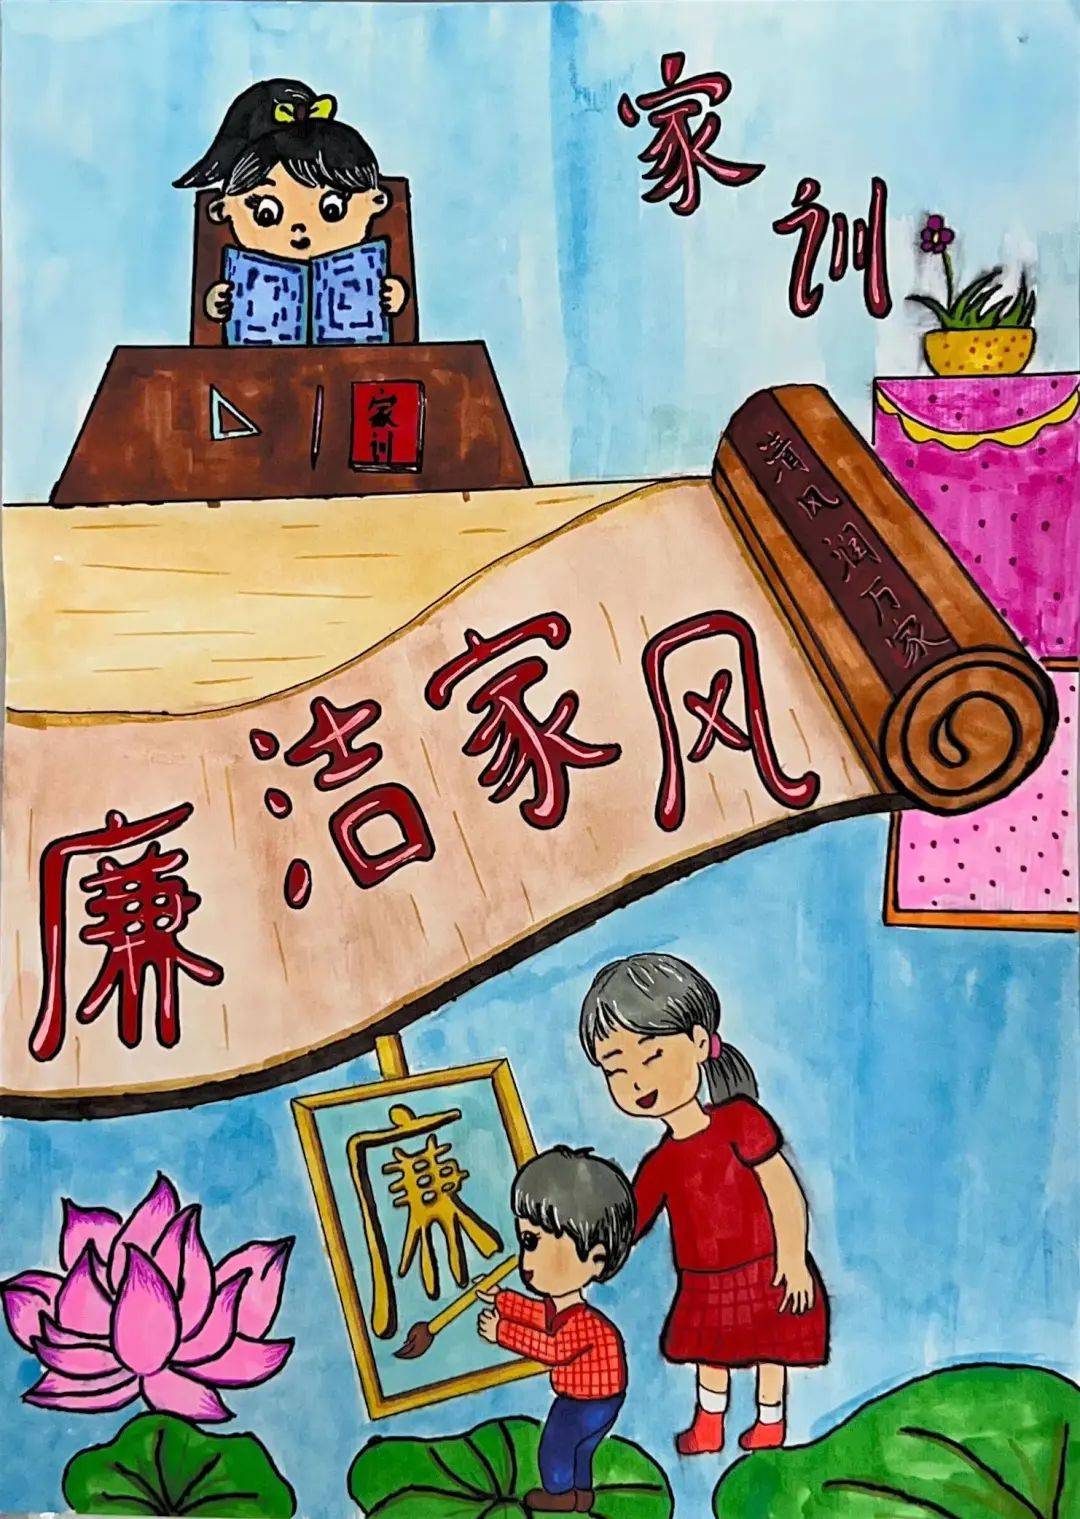 金林区第二小学 刘梓煊绘画作品 《廉洁家风》来源:伊春市精神文明